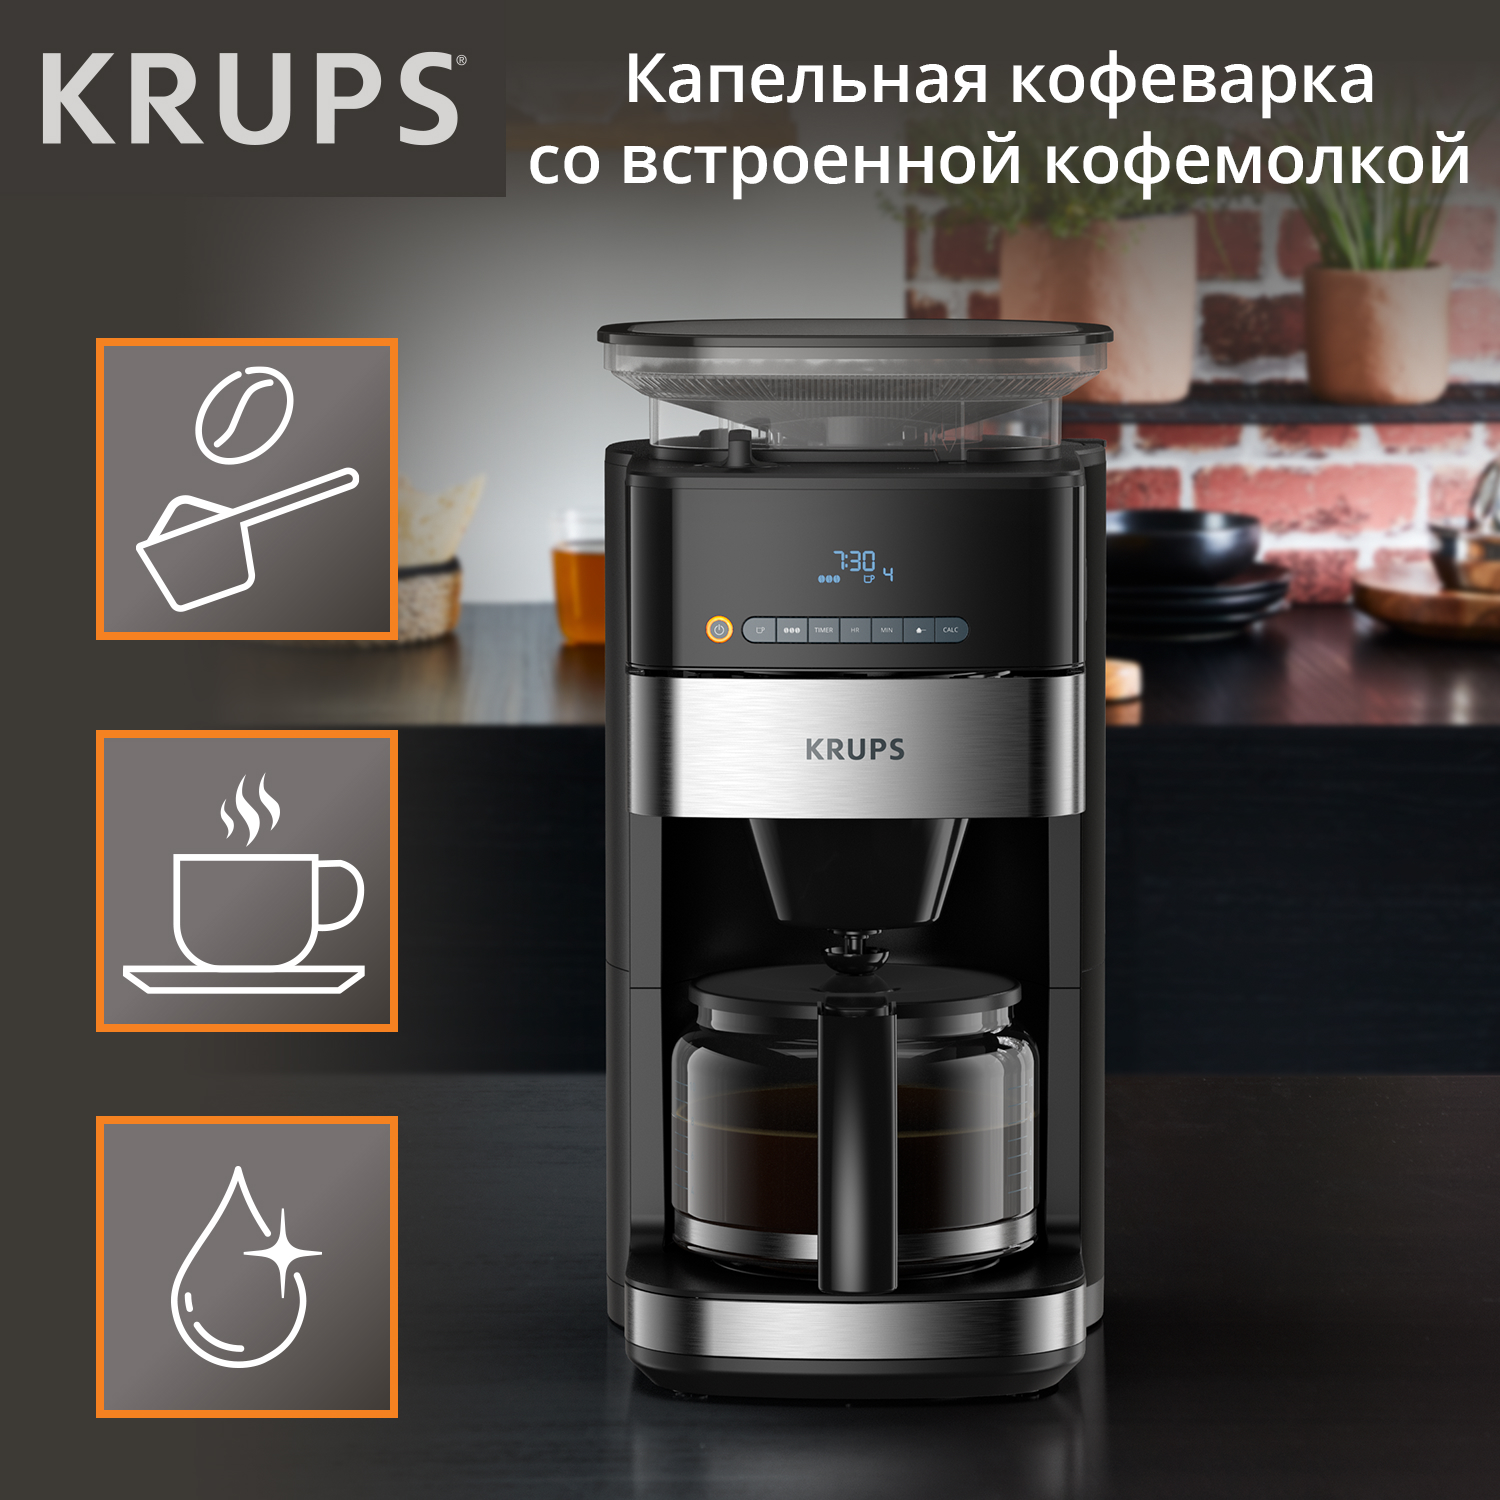 Кофеварка капельного типа Krups Grind Aroma KM832810 с кофемолкой, черный/серебристый кофеварка рожковая krups